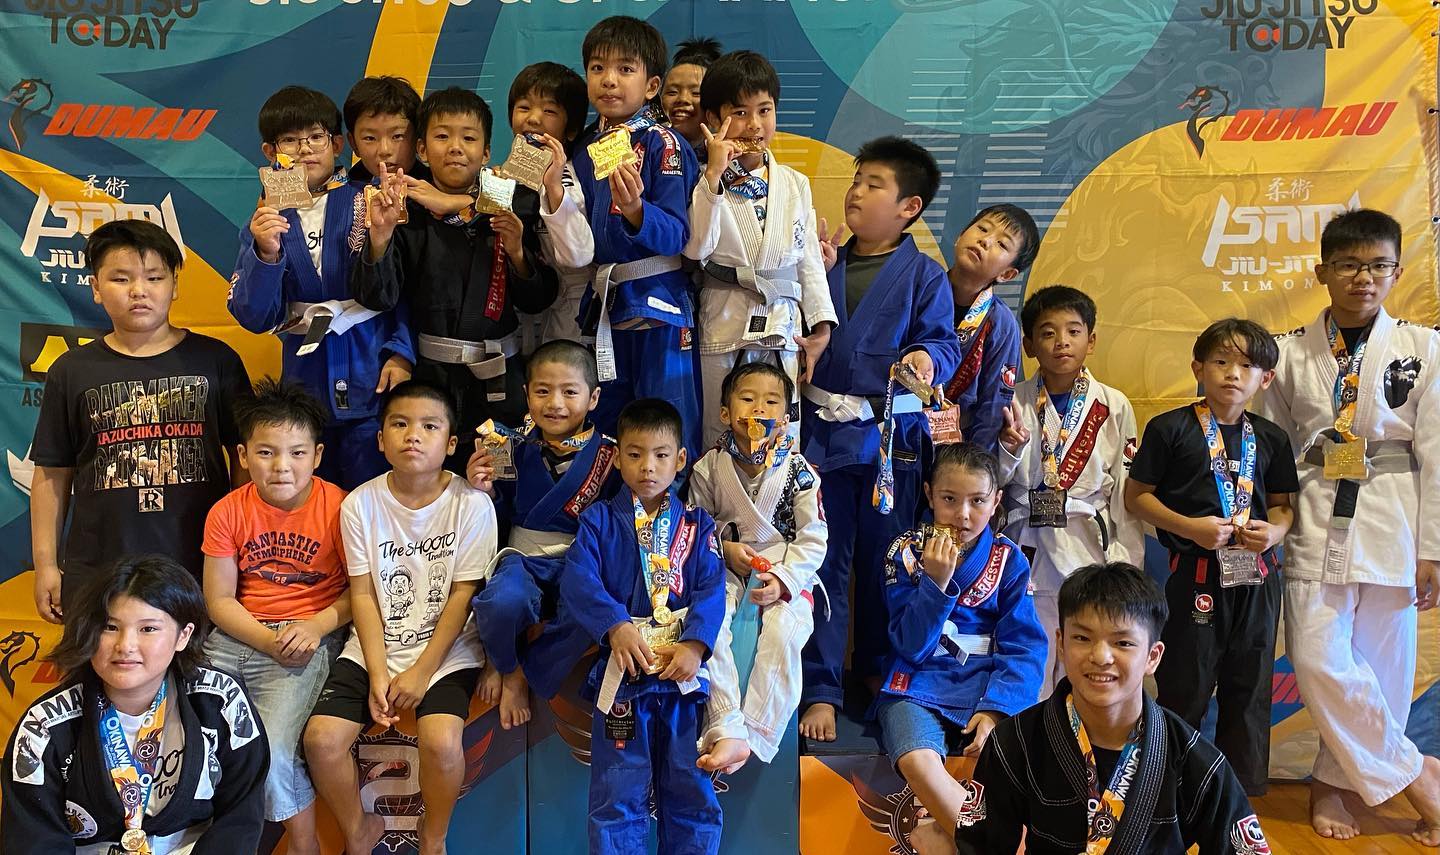 先週末は沖縄市コザ武道館にて柔術トーナメント『Okinawa Jiu-jitsu Championships2023』が開催されました！Theパラエストラ沖縄からはキッズ２0人、大人１2人と大挙参戦。キッズは出場者の７割が金メダル、優勝を逃した子も全ての生徒がメダルを獲得する好成績！大人は盤石の勝利や悔しい敗戦もありました。非日常の緊張感の中、強い気持ちをもって見知らぬ相手と自分の実力を競い合う。出場した選手、皆経験が出来たと思います。試合はただただ競技が強くなる訳ではなく、その人の人間力を向上させます。引き続き楽しんでトレーニングをして心身共に強くなって行きましょう！#パラエストラ #沖縄 #那覇 #与儀 #MMA #shooto #コザ #総合格闘技 #修斗 #キックボクシング #柔術 #jiujitsu #ダイエット